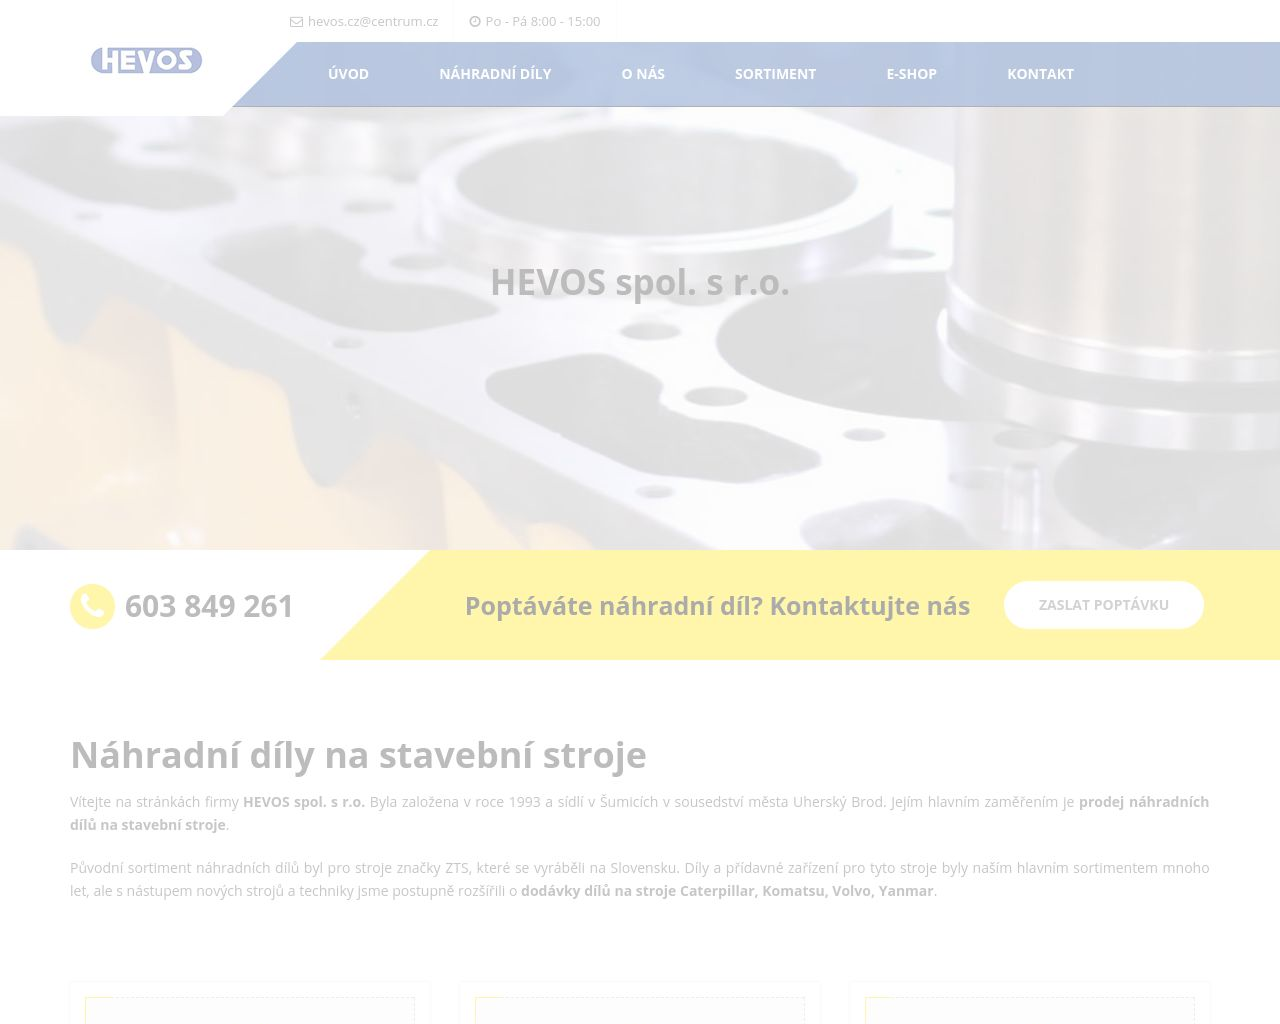 Site Image stavebnistroje-hevos.cz v 1280x1024